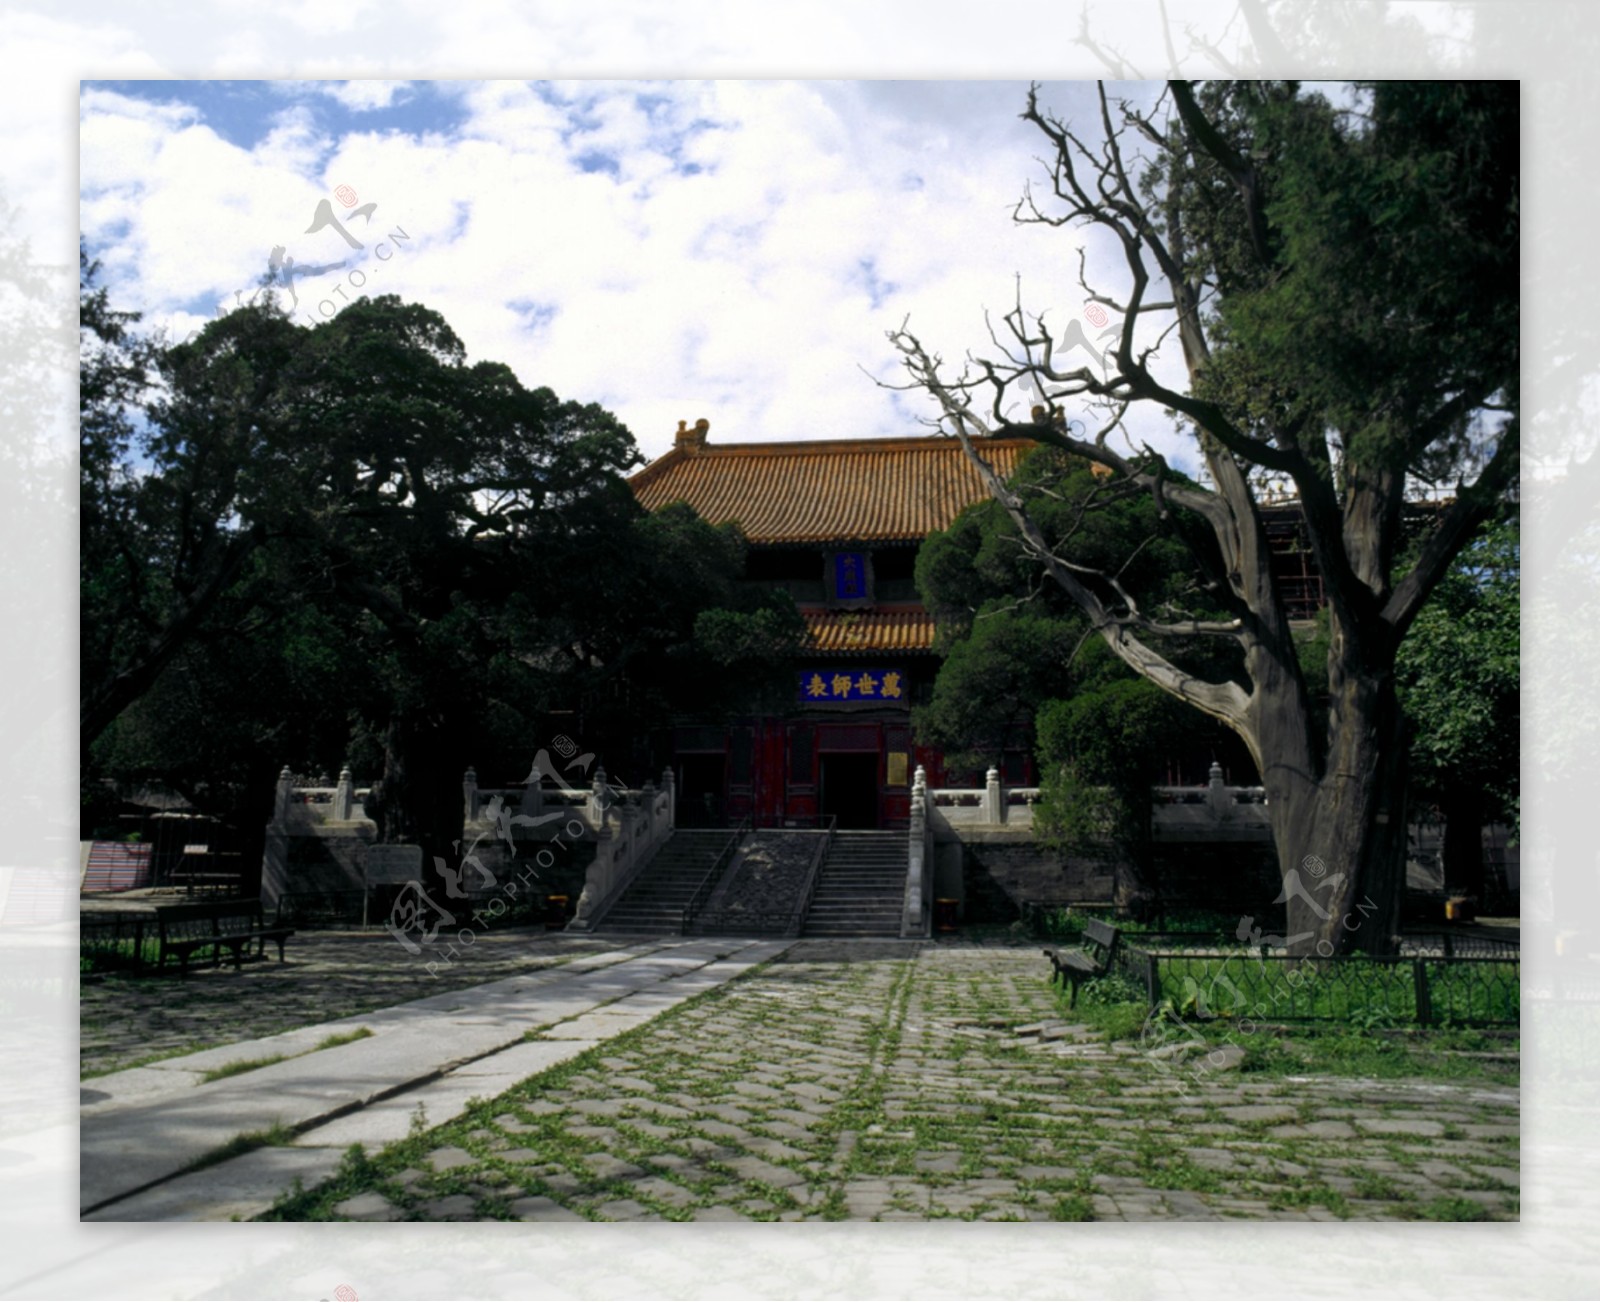 北京皇家园林建筑古木石板路蓝天白云天坛